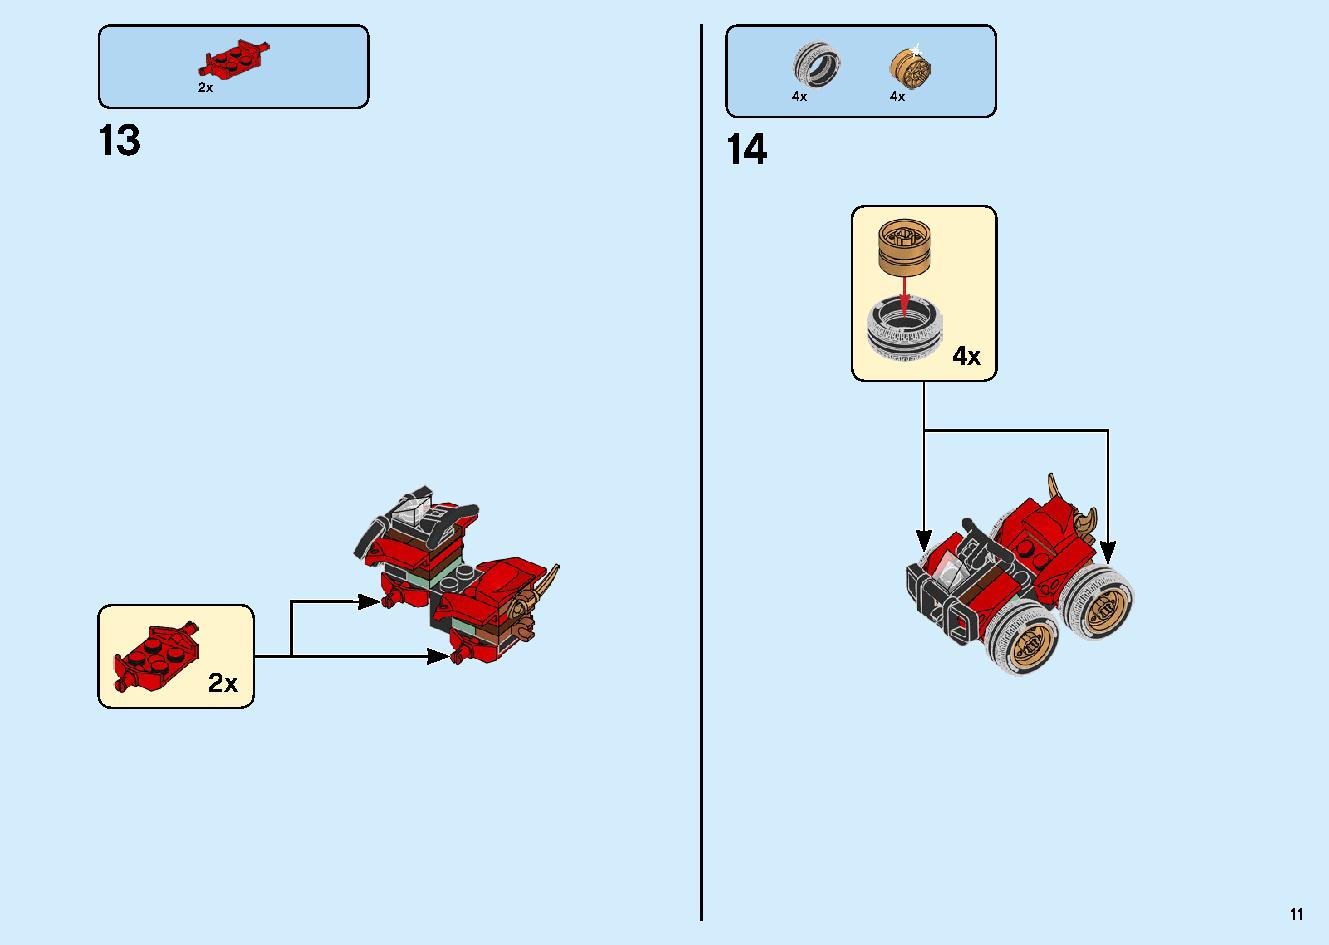 陸上戦艦バウンティ号 70677 レゴの商品情報 レゴの説明書・組立方法 11 page